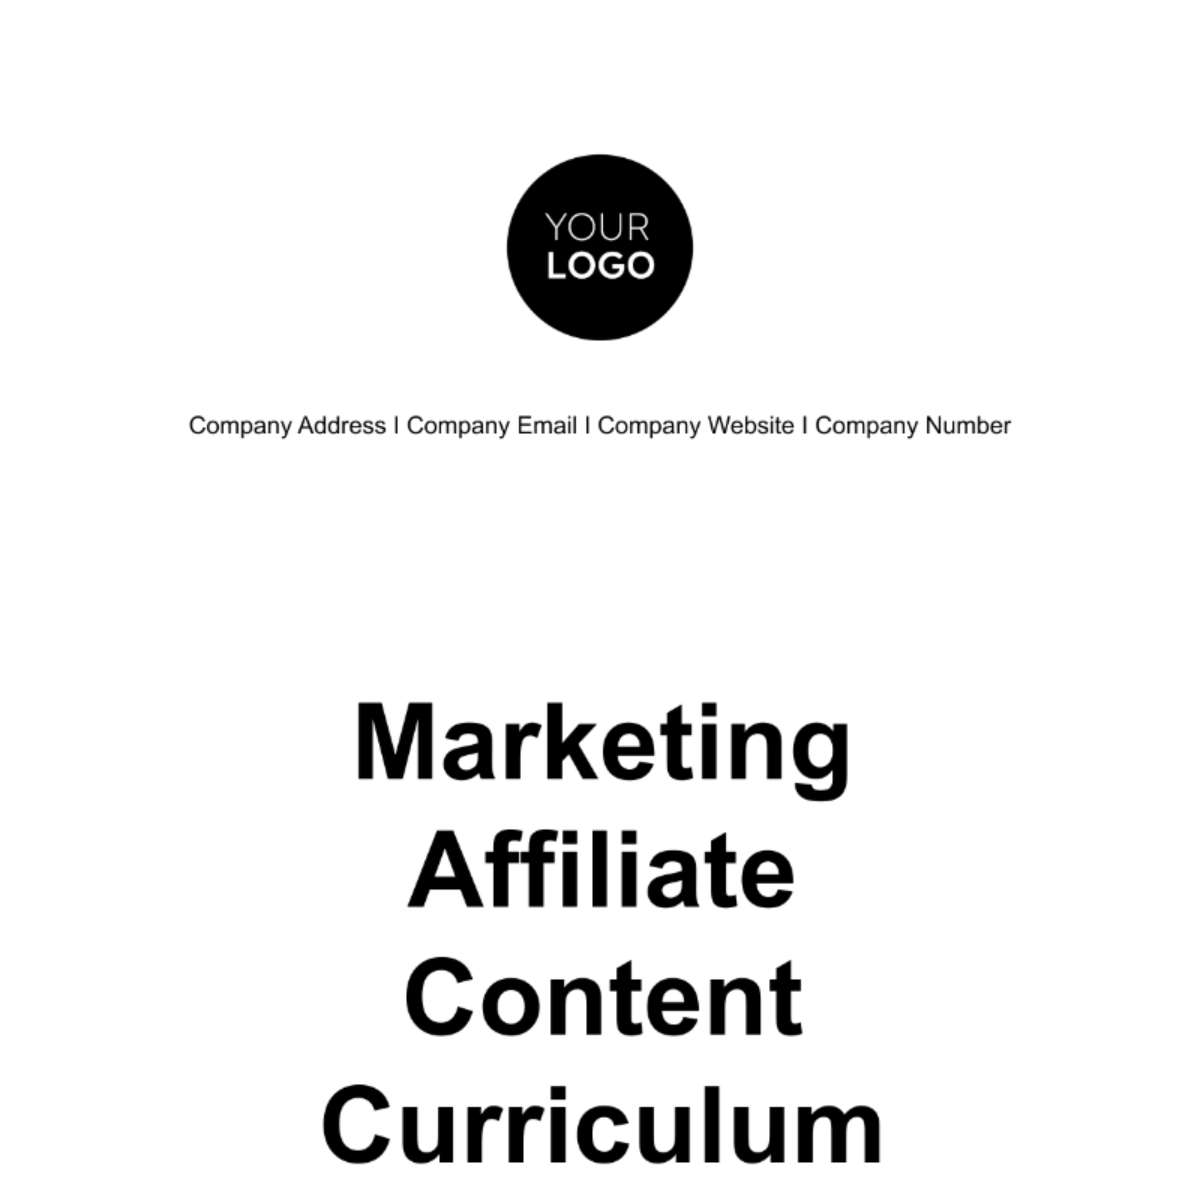 Marketing Affiliate Content Curriculum Template